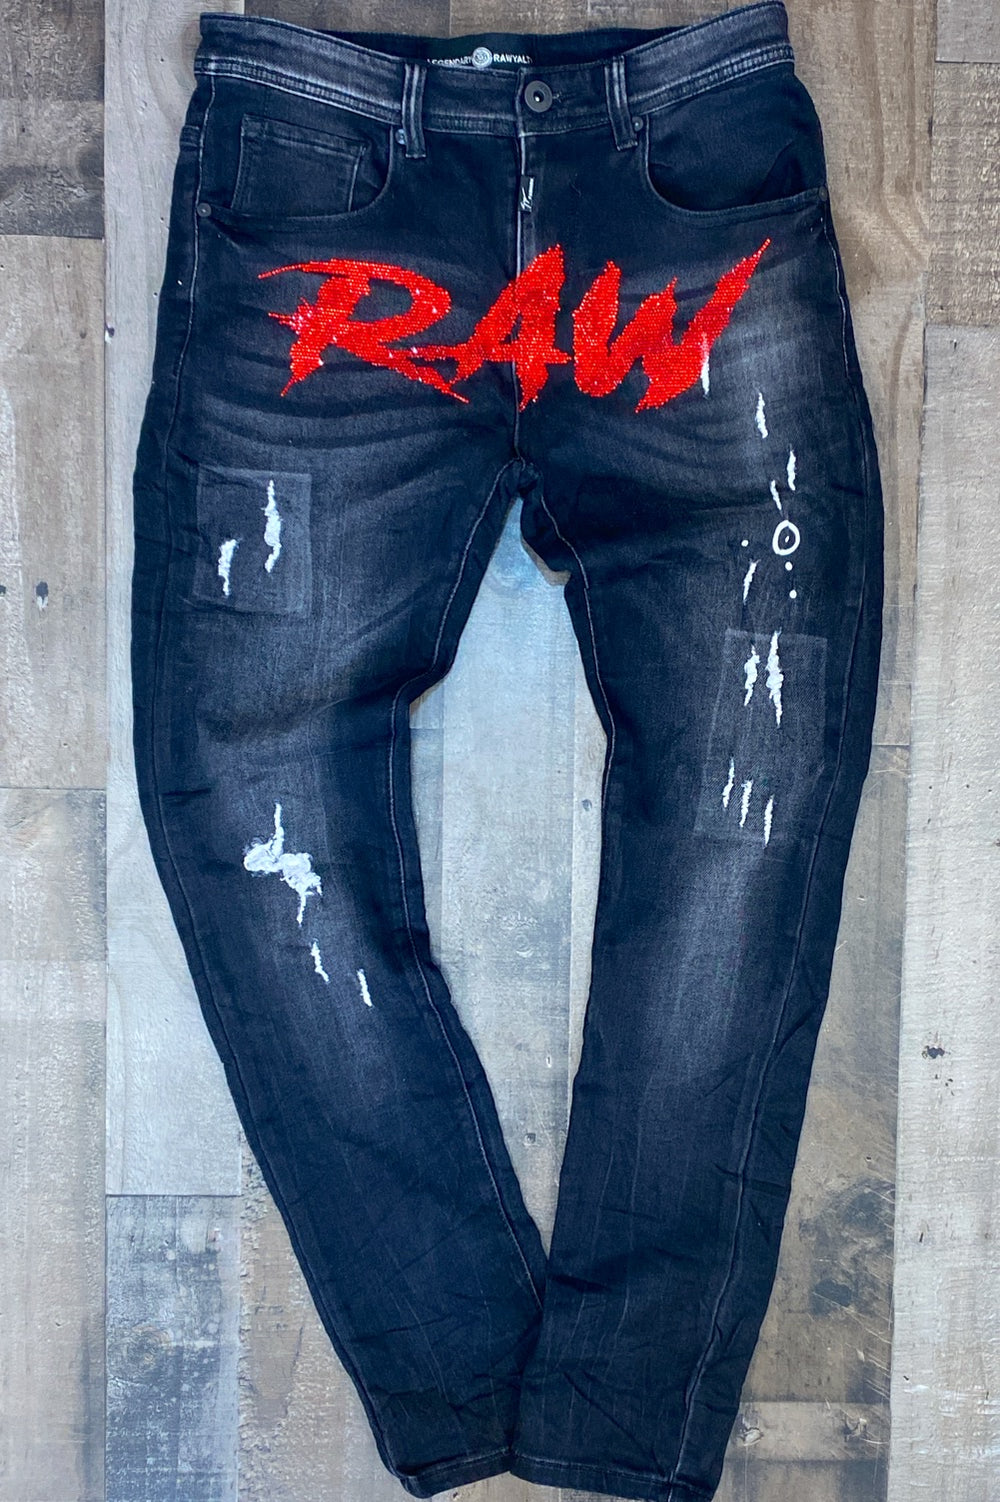 Rawyalty- RAW jeans (black/red)